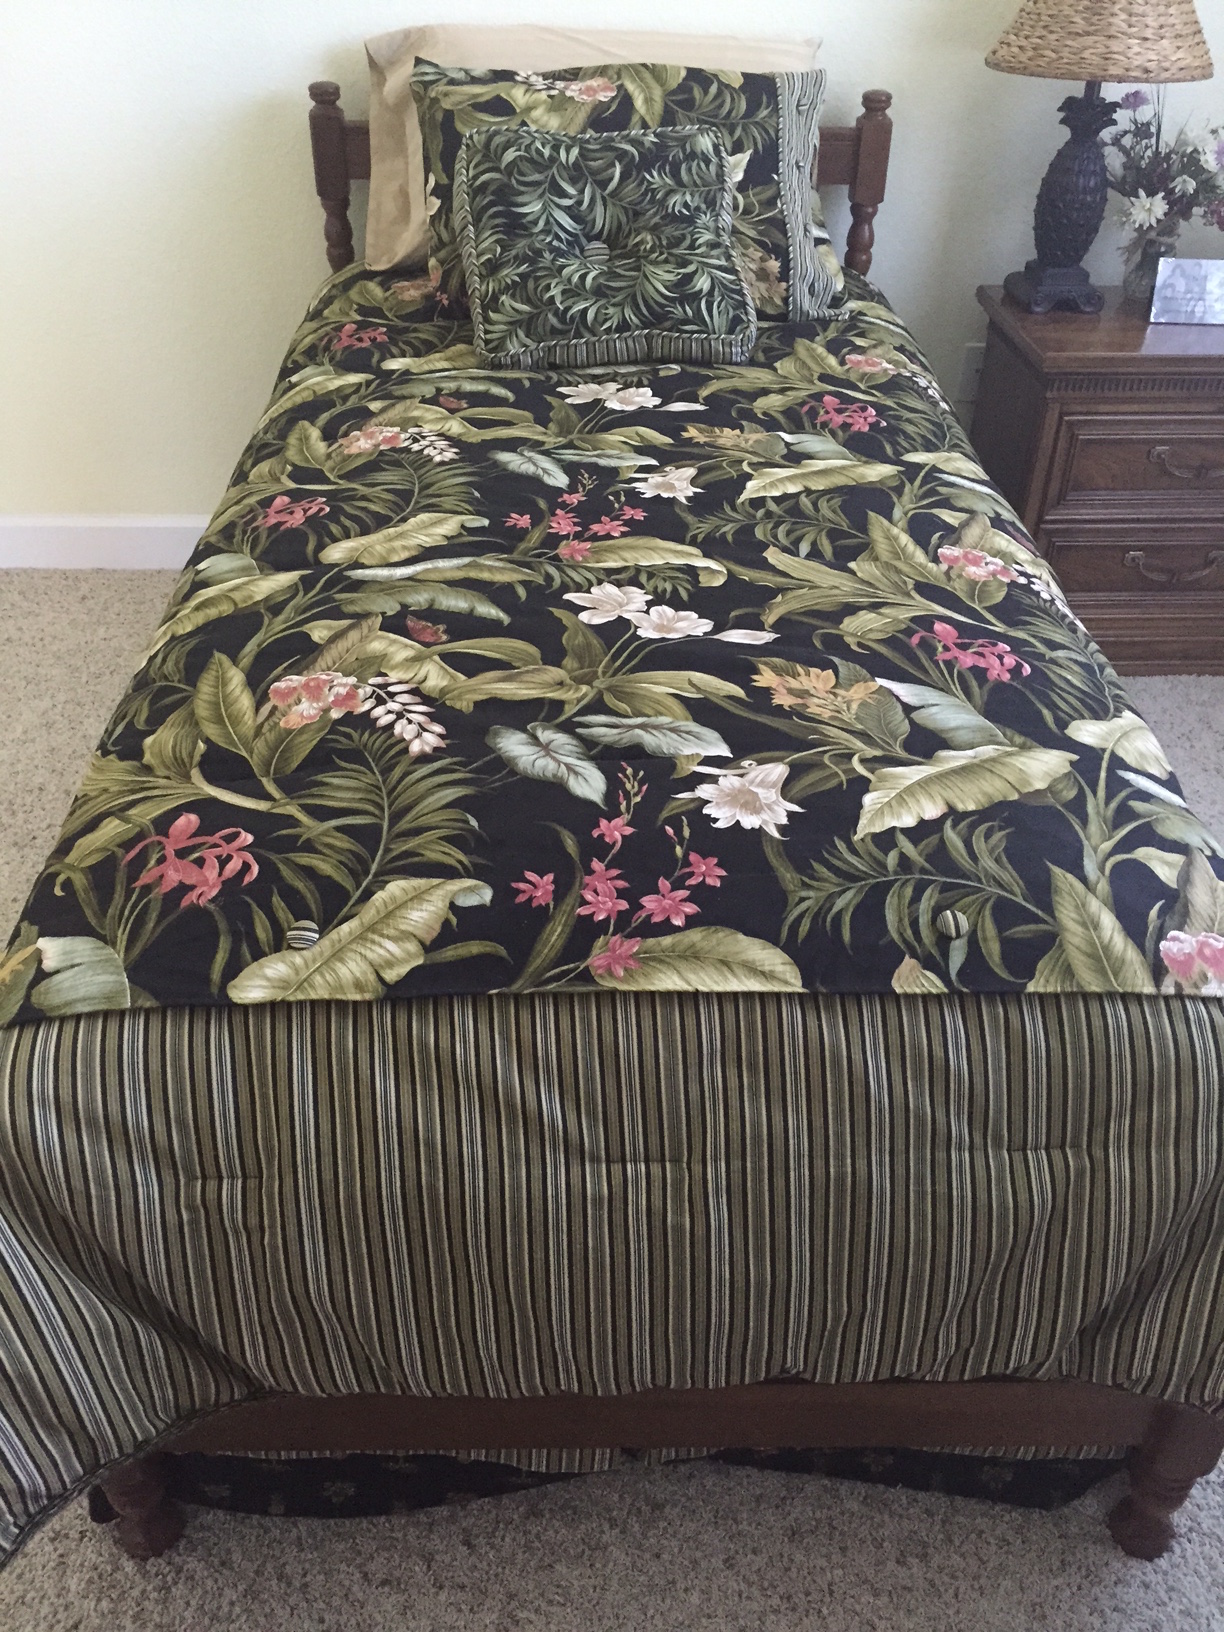 Twin bed comforter